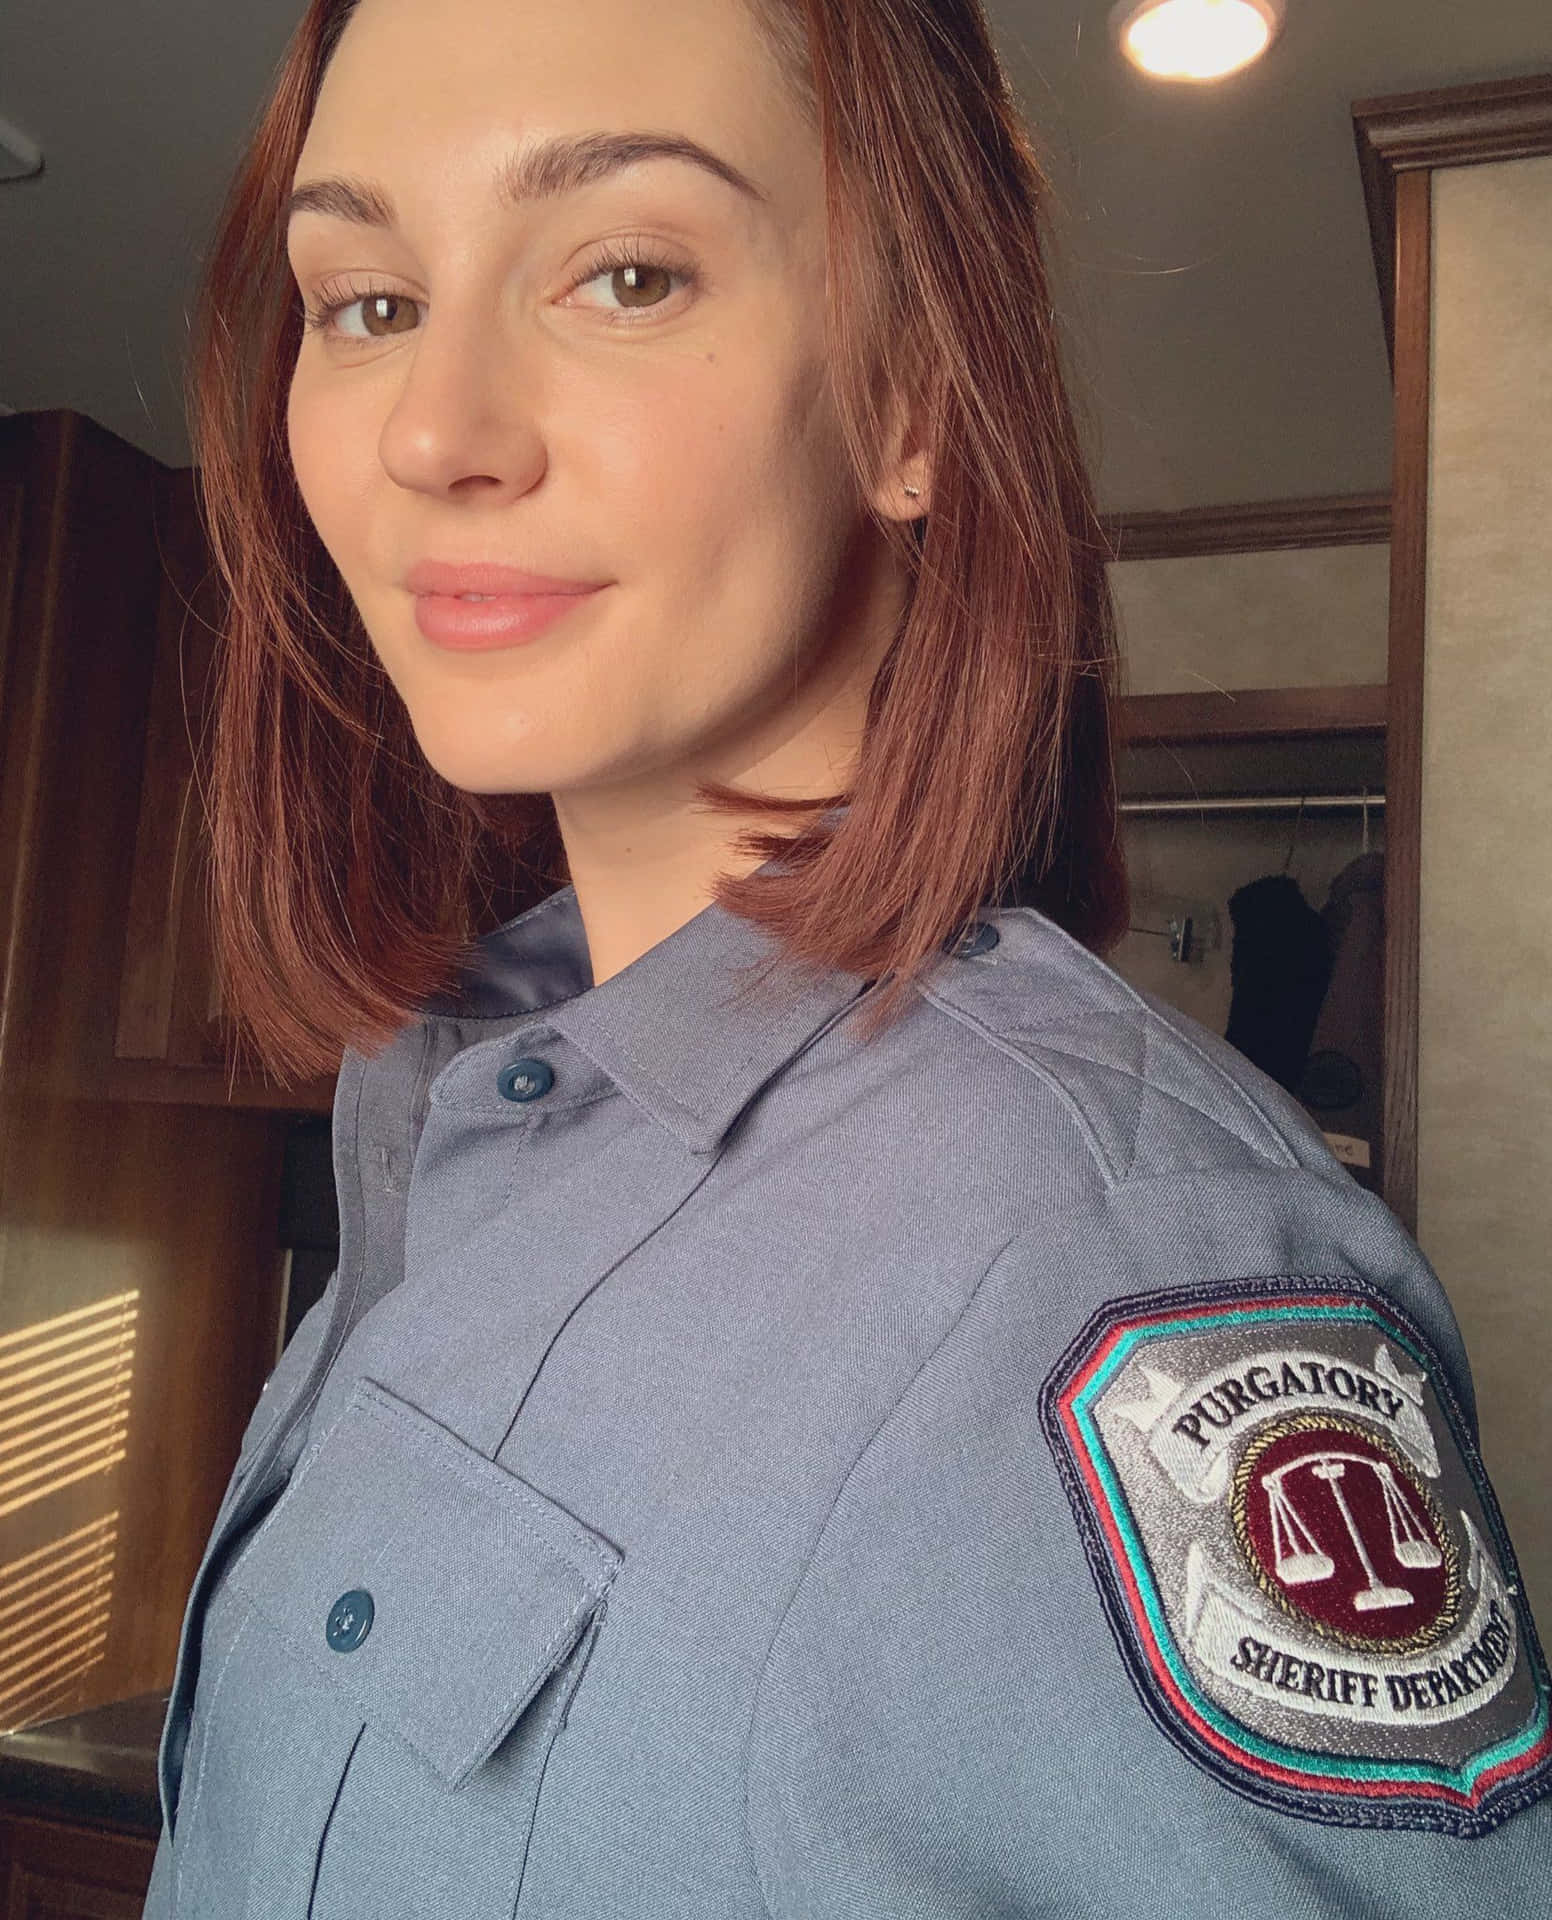 Actressin Sheriff Uniform Selfie Wallpaper